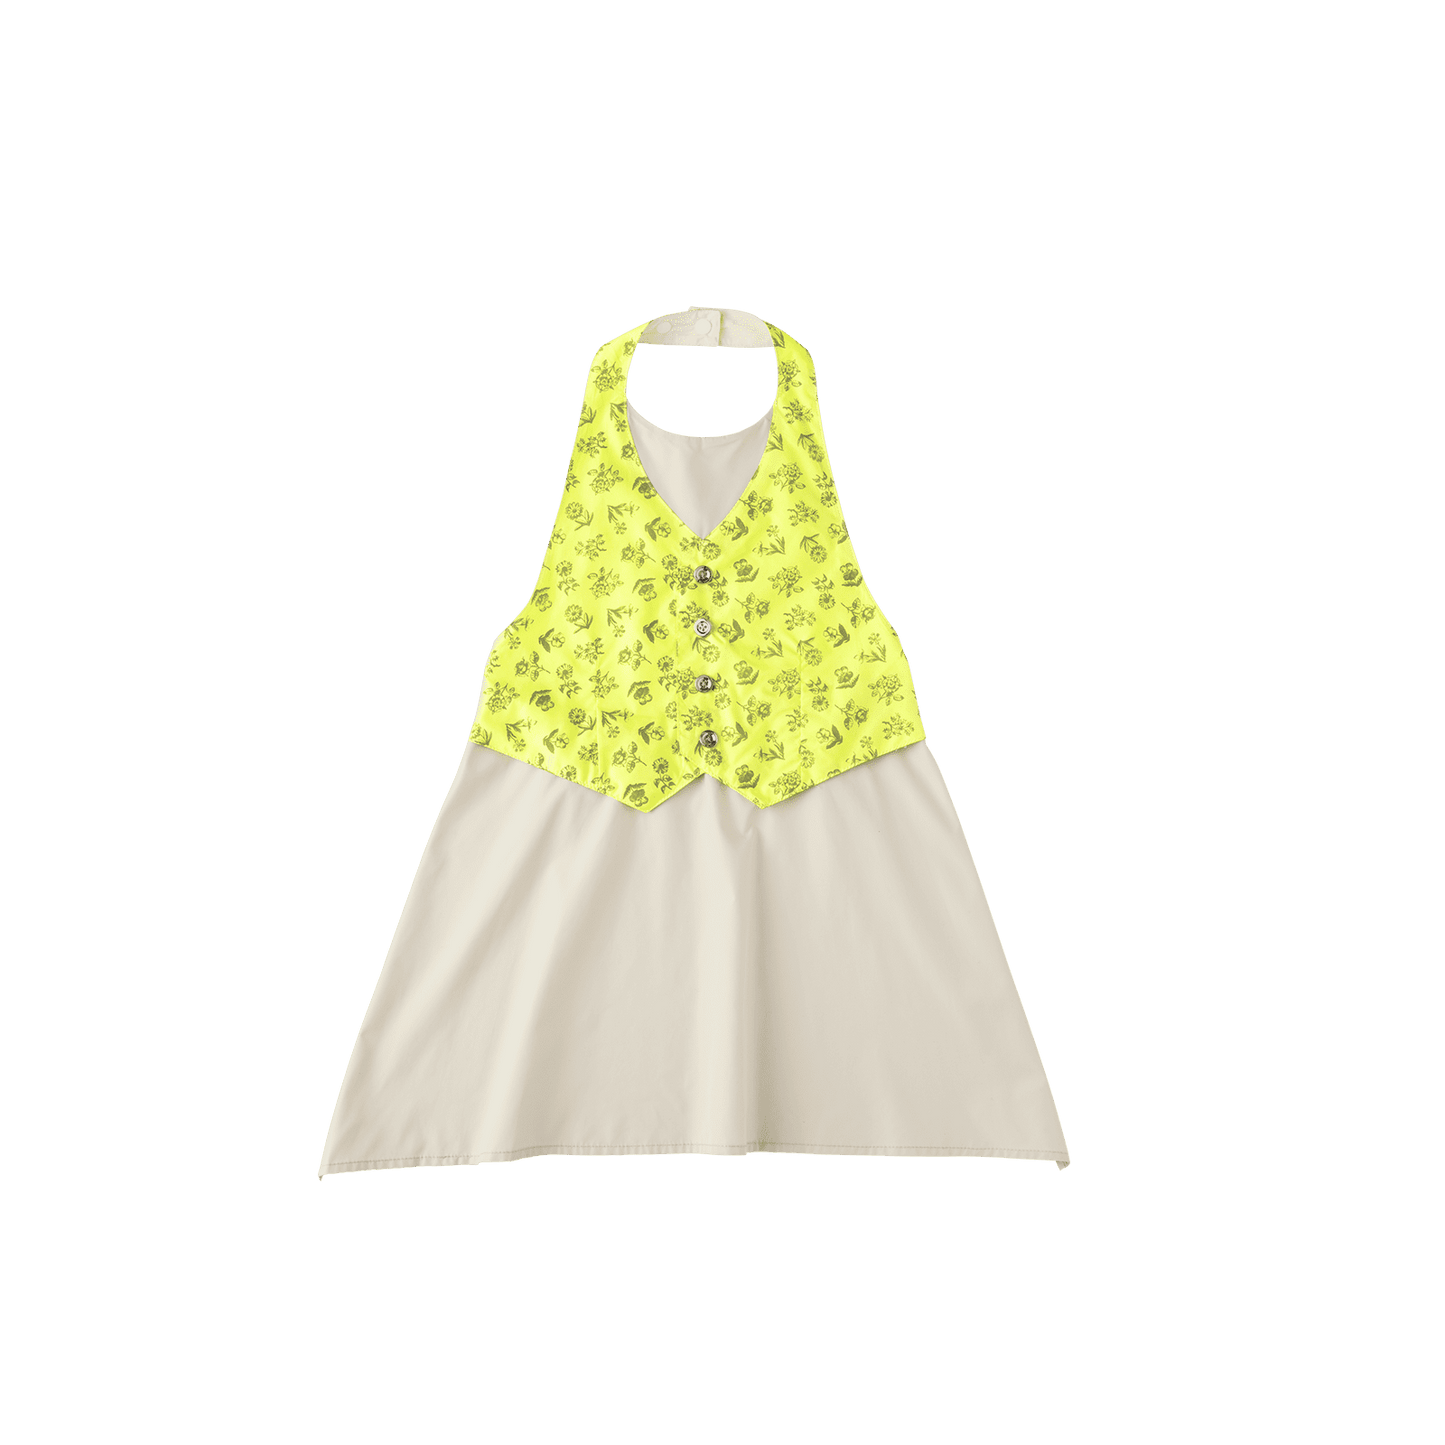 Size 100-110: garcon 5 yellow flower